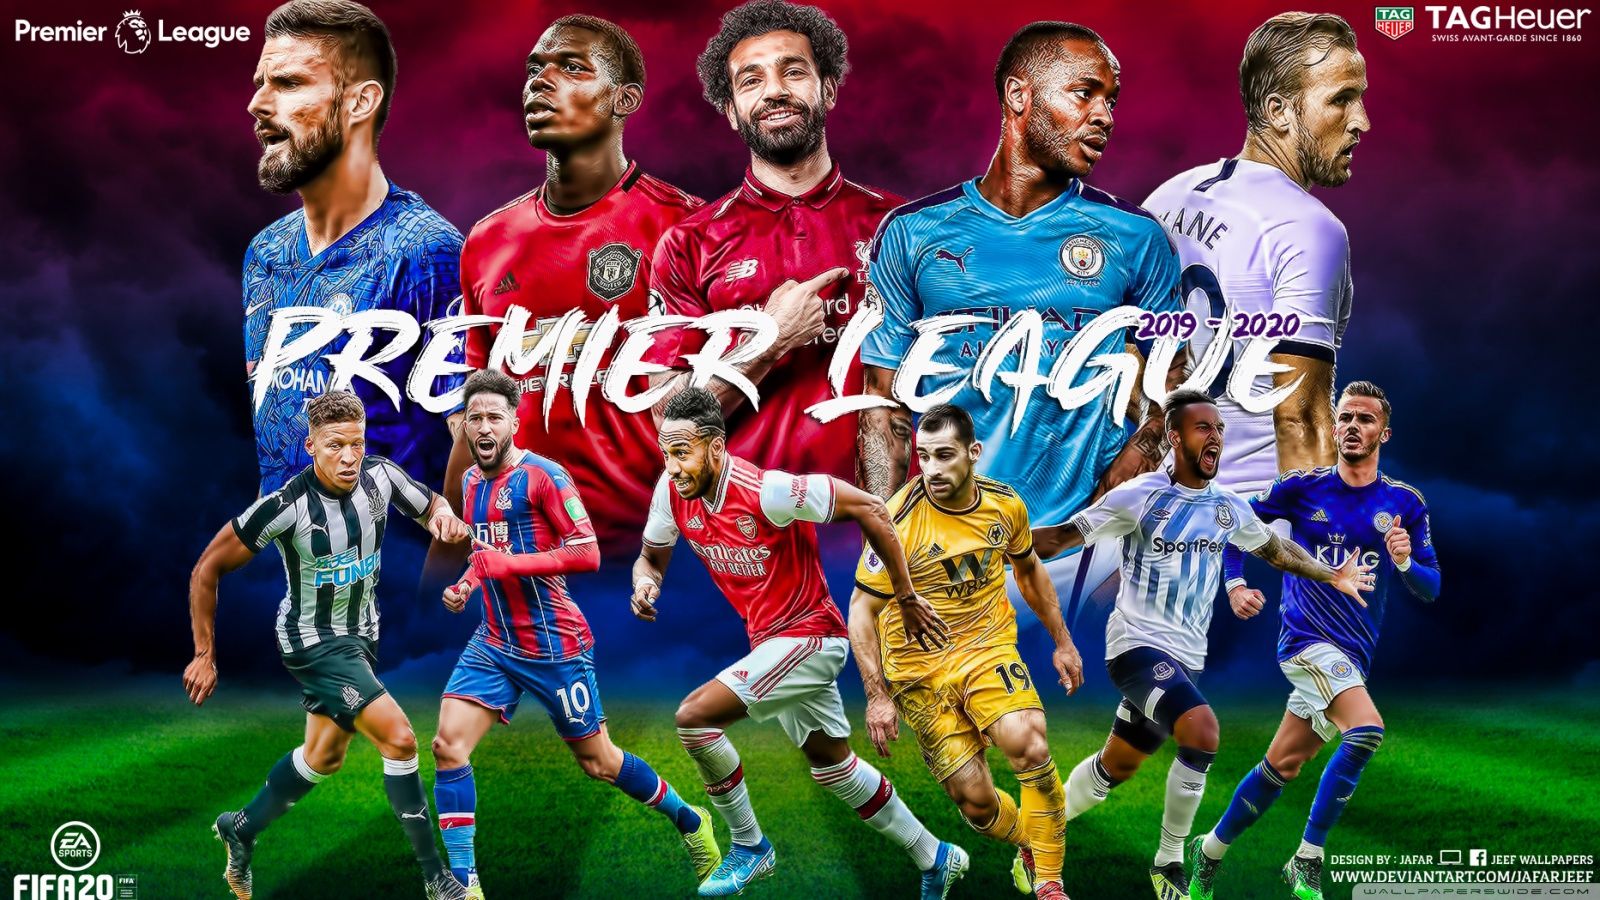 Premier League Wallpapers 4k, HD Premier League Backgrounds on